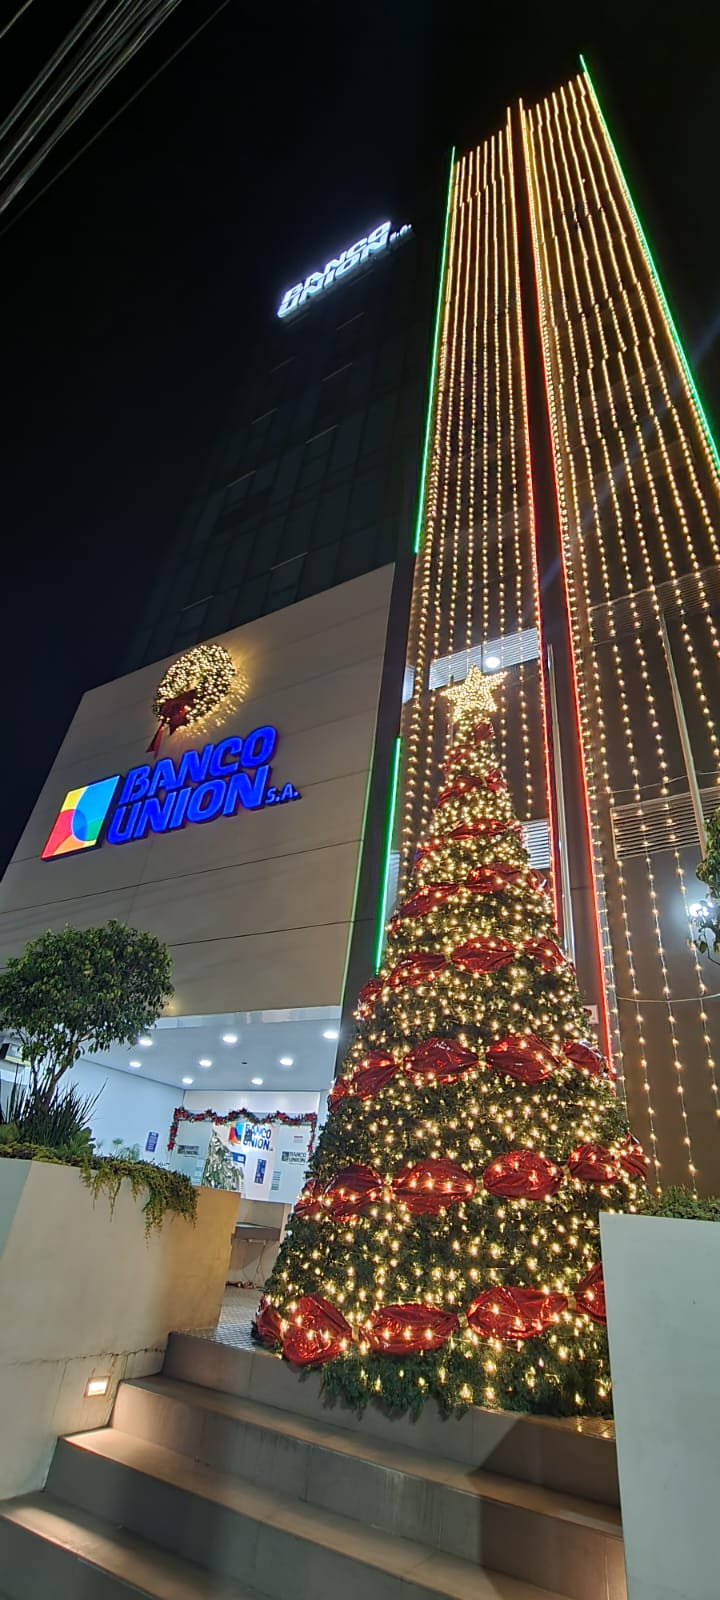 Edificio Central de Banco Unión en Sucre, se engalana con un imponente árbol, muchas luces y adornos navideños